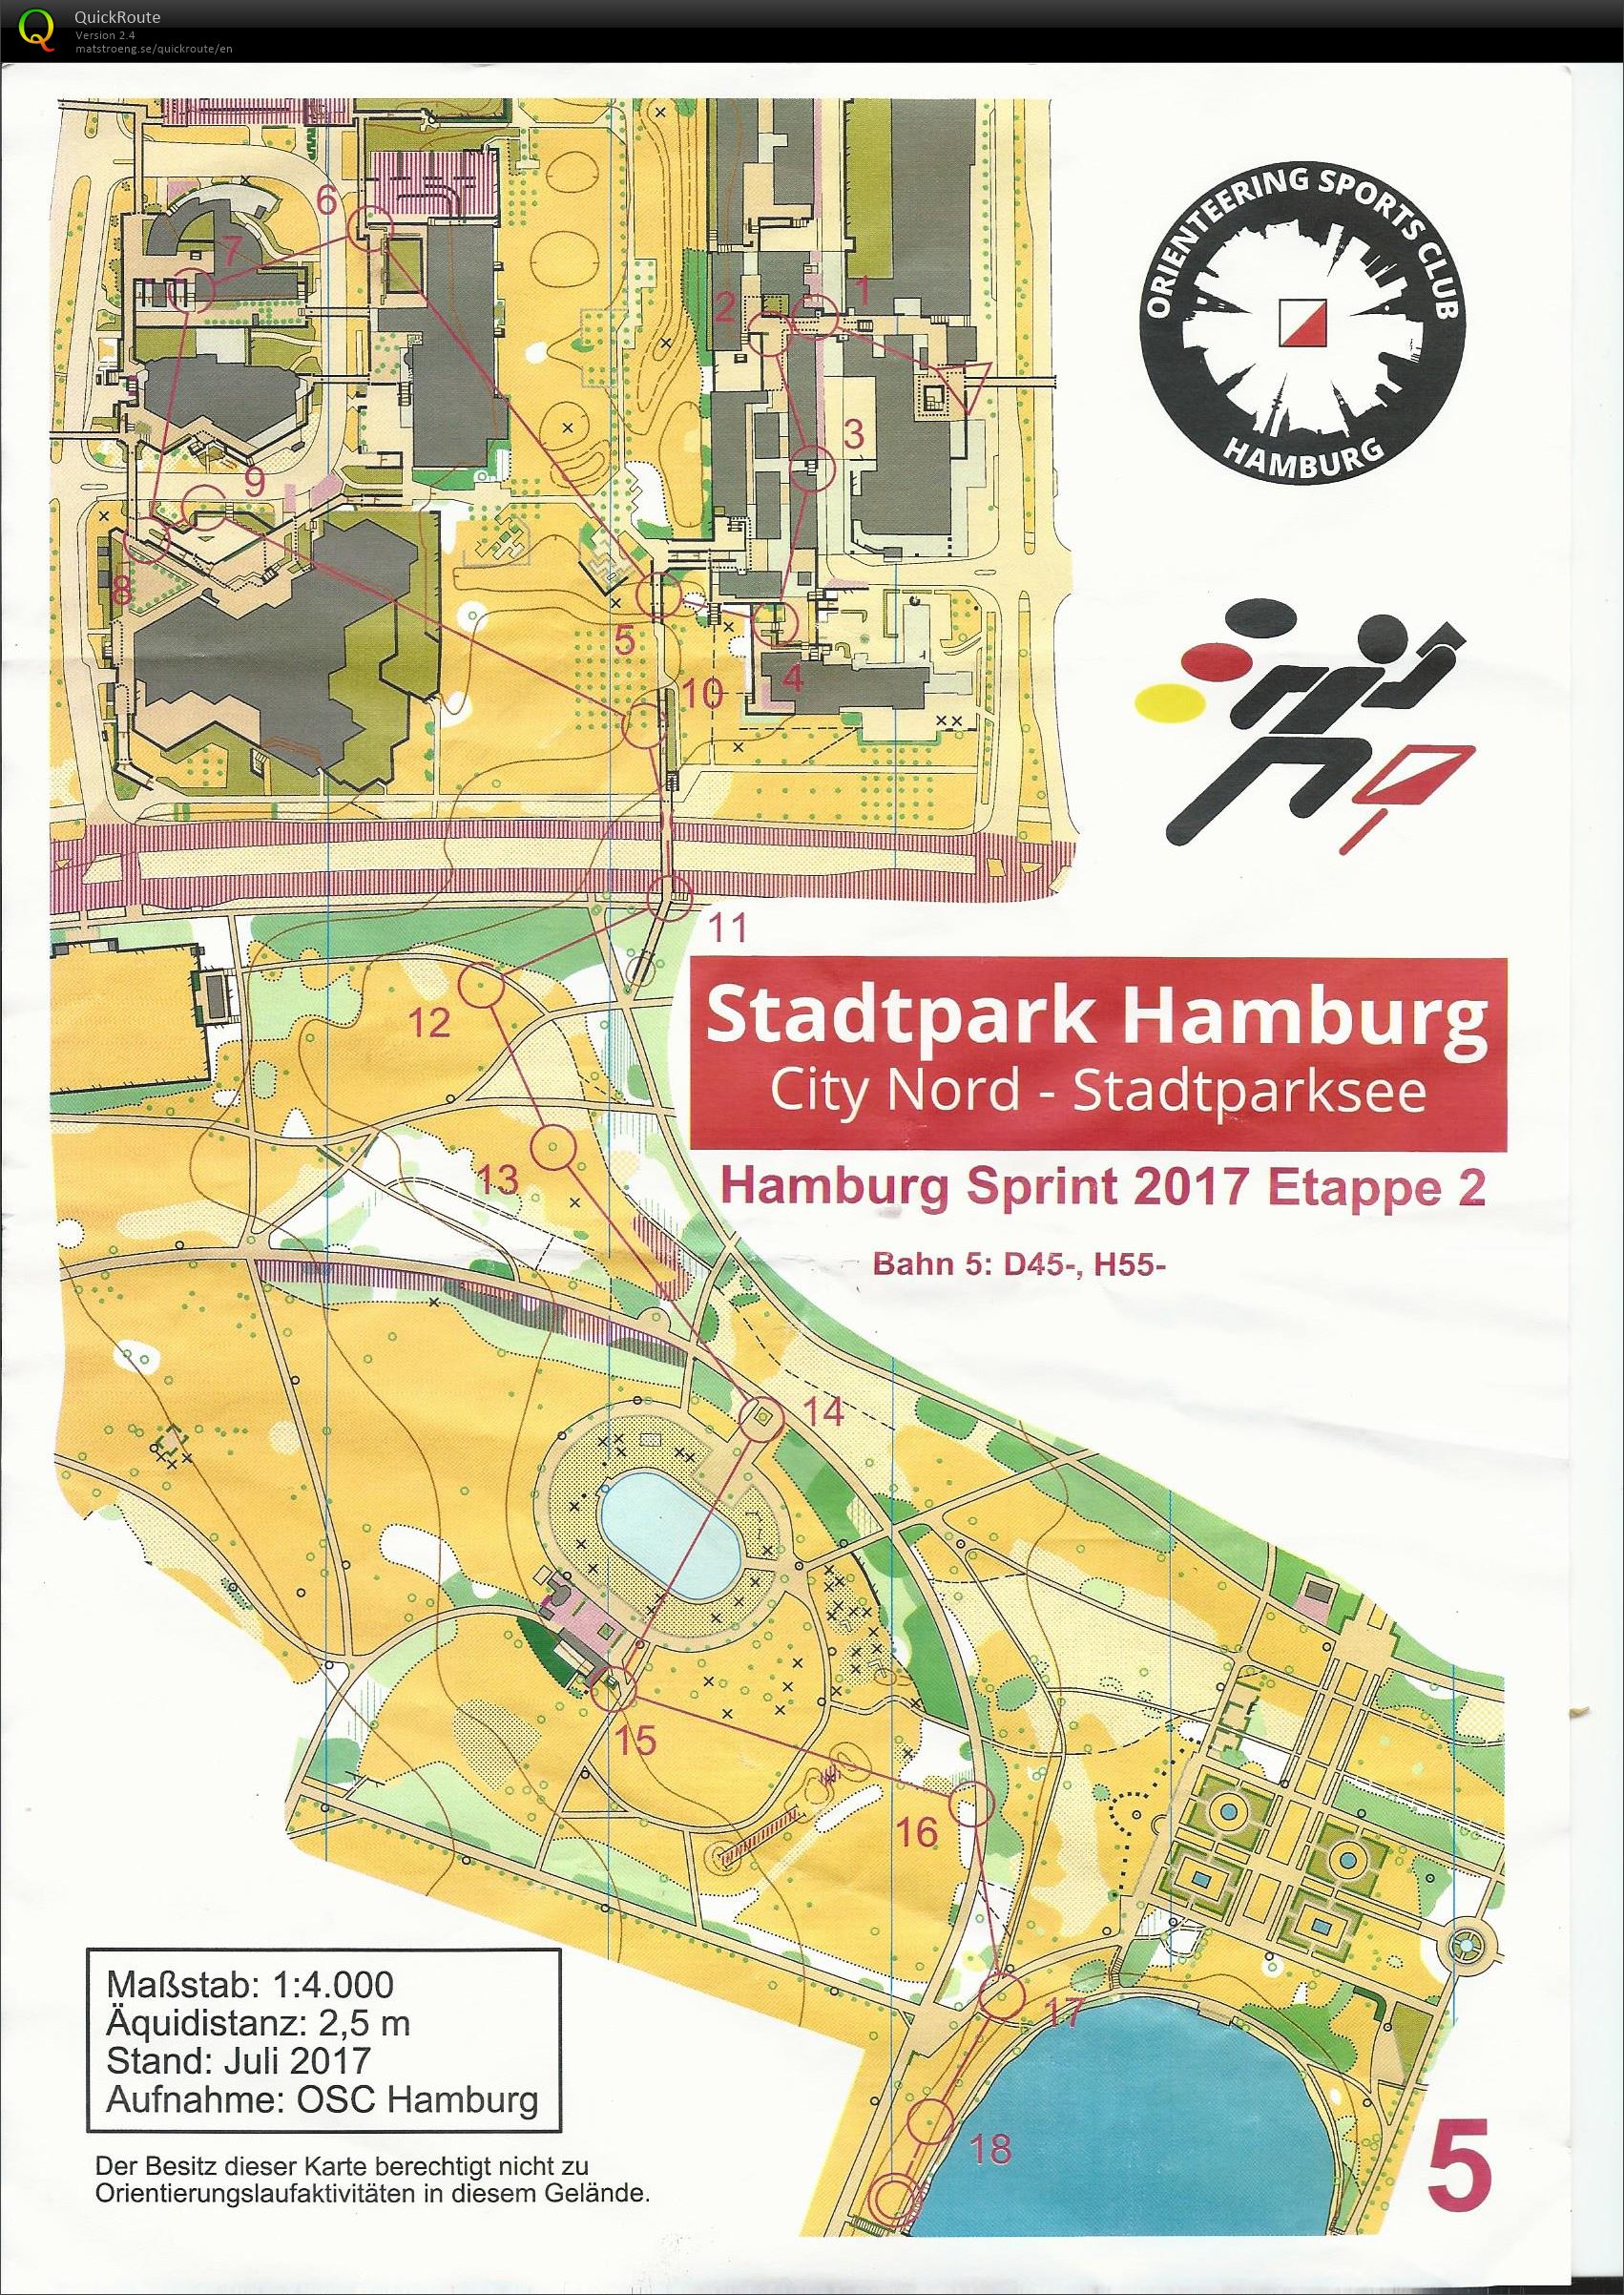 Hamburg sprint 2017 etape 2 (12-08-2017)